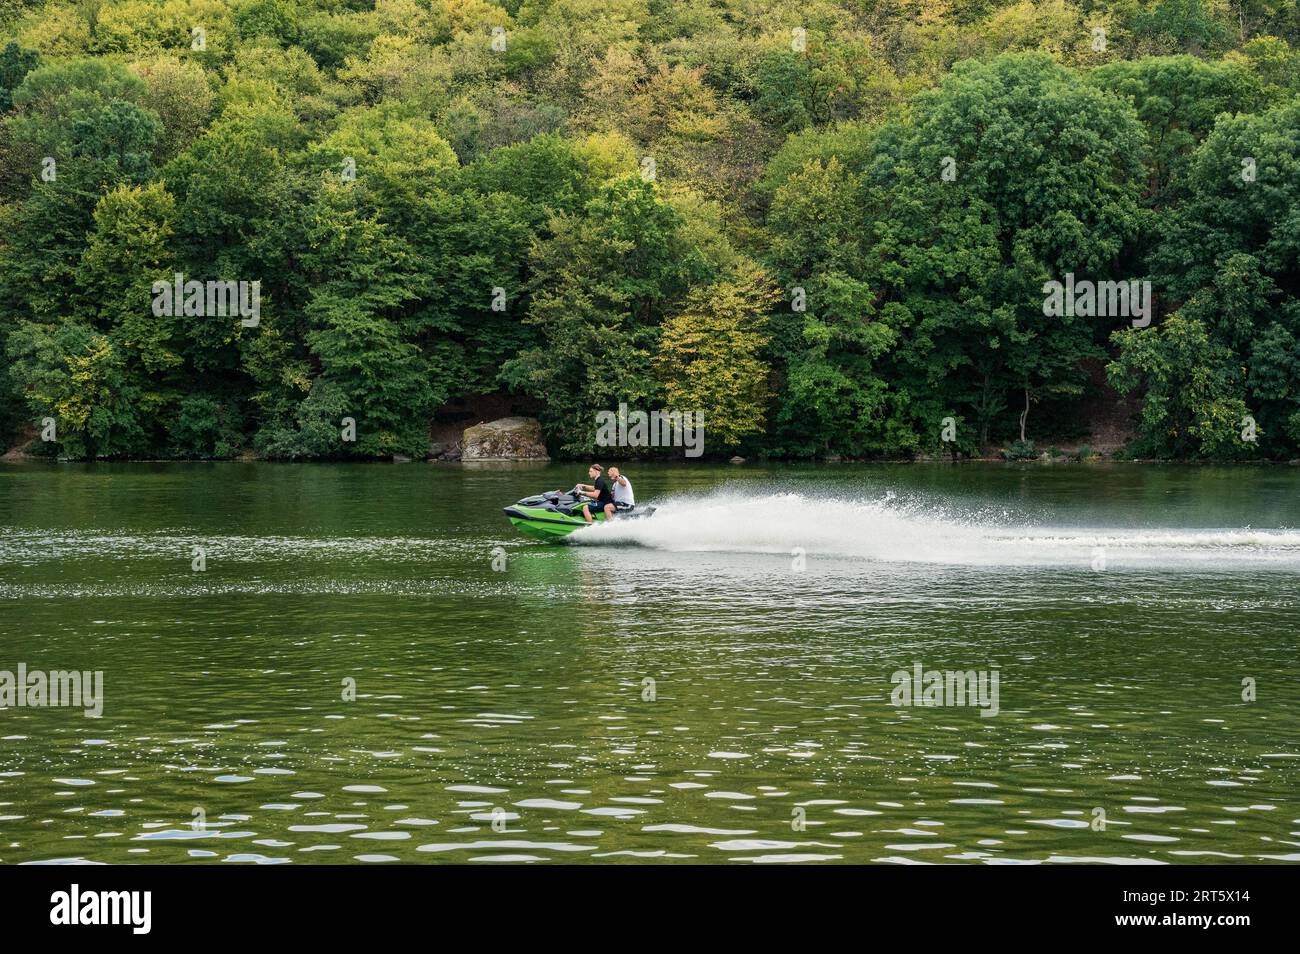 Zwei Personen reiten mit Jetski-Wasserfahrzeug auf dem Fluss mit wunderschönen grünen Bäumen im Hintergrund. Geschwindigkeit, Sport, Urlaub, extrem Stockfoto